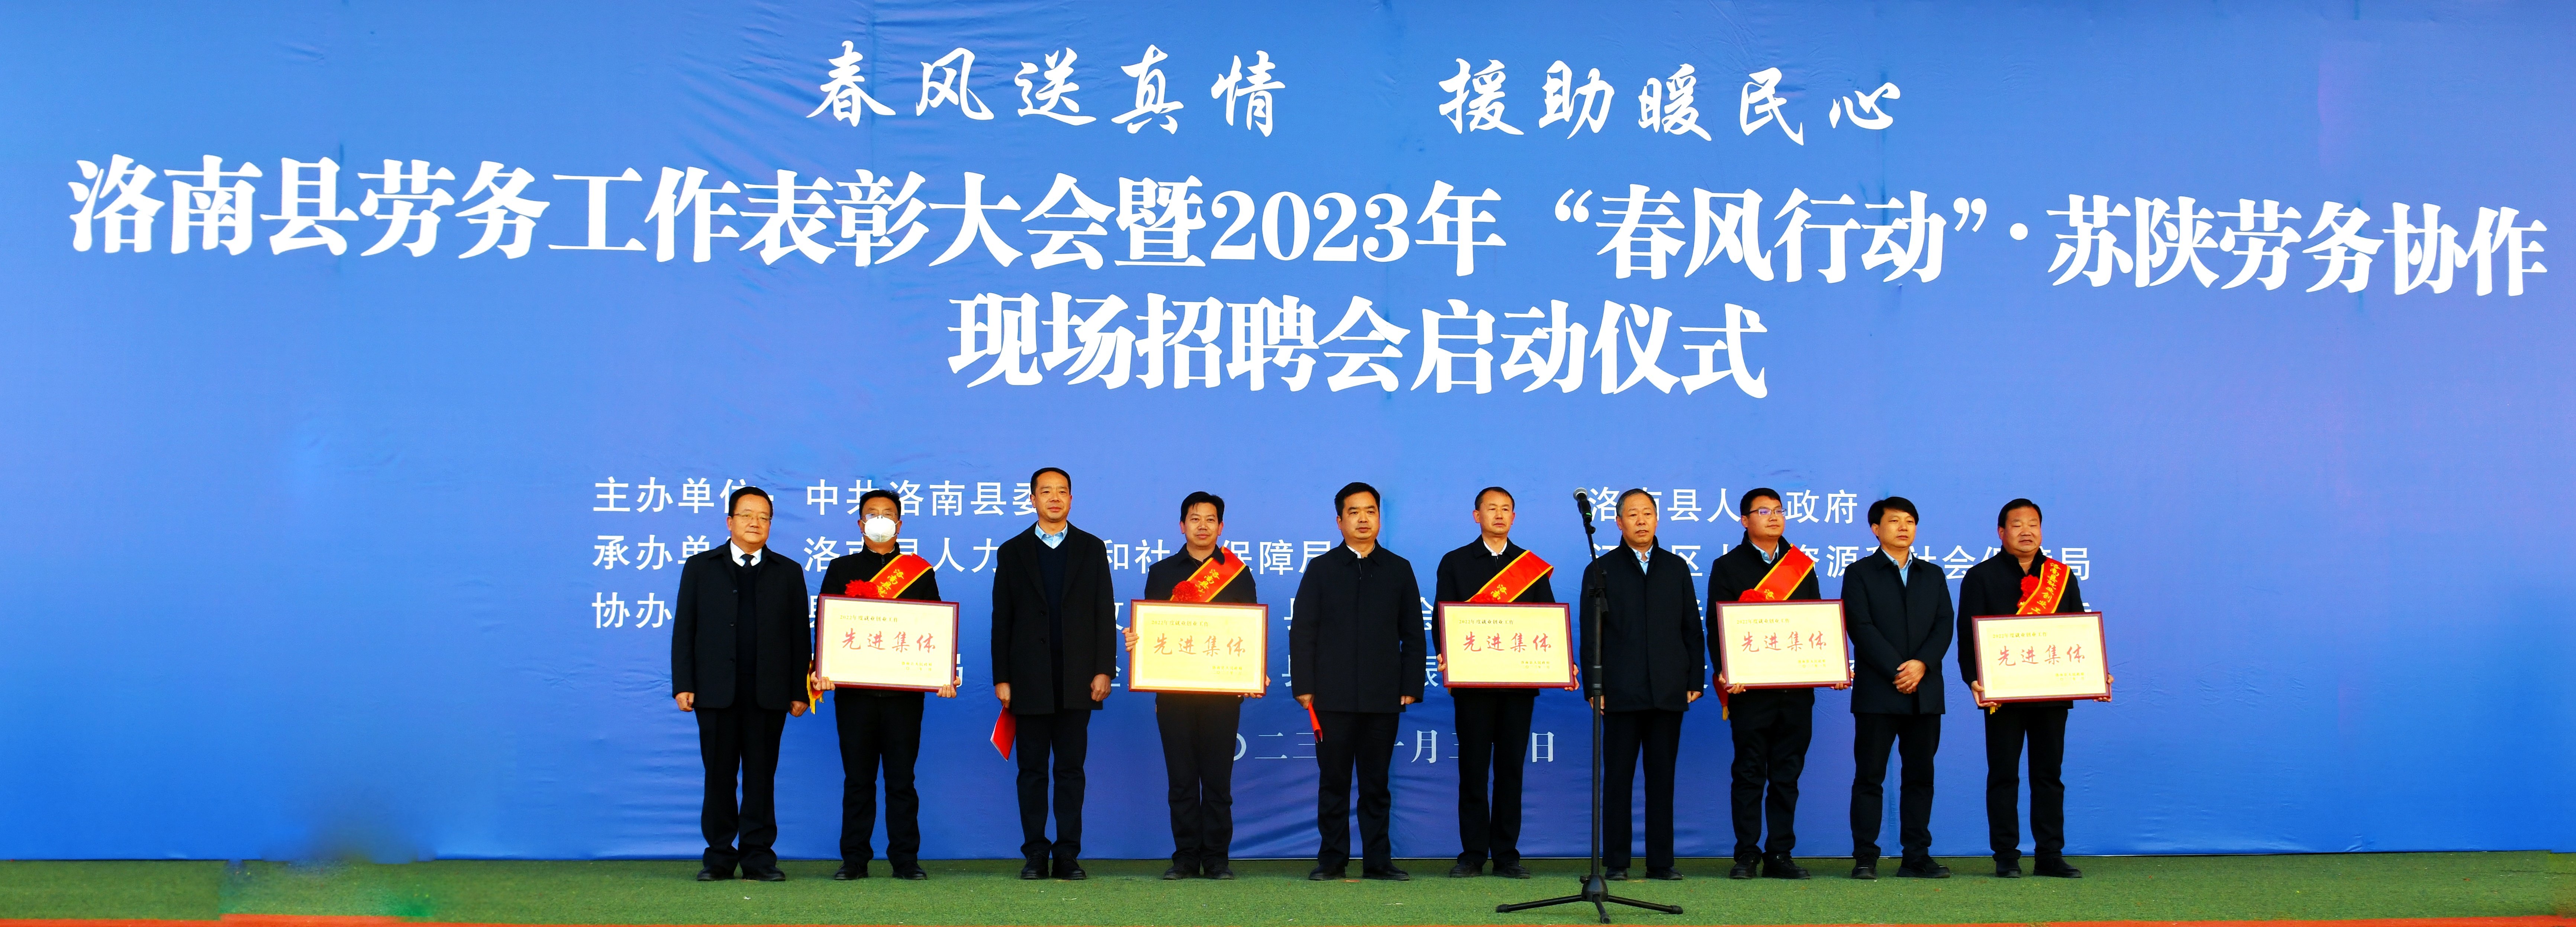 洛南举行2023年“春风行动”暨苏陕劳务协作现场招聘活动